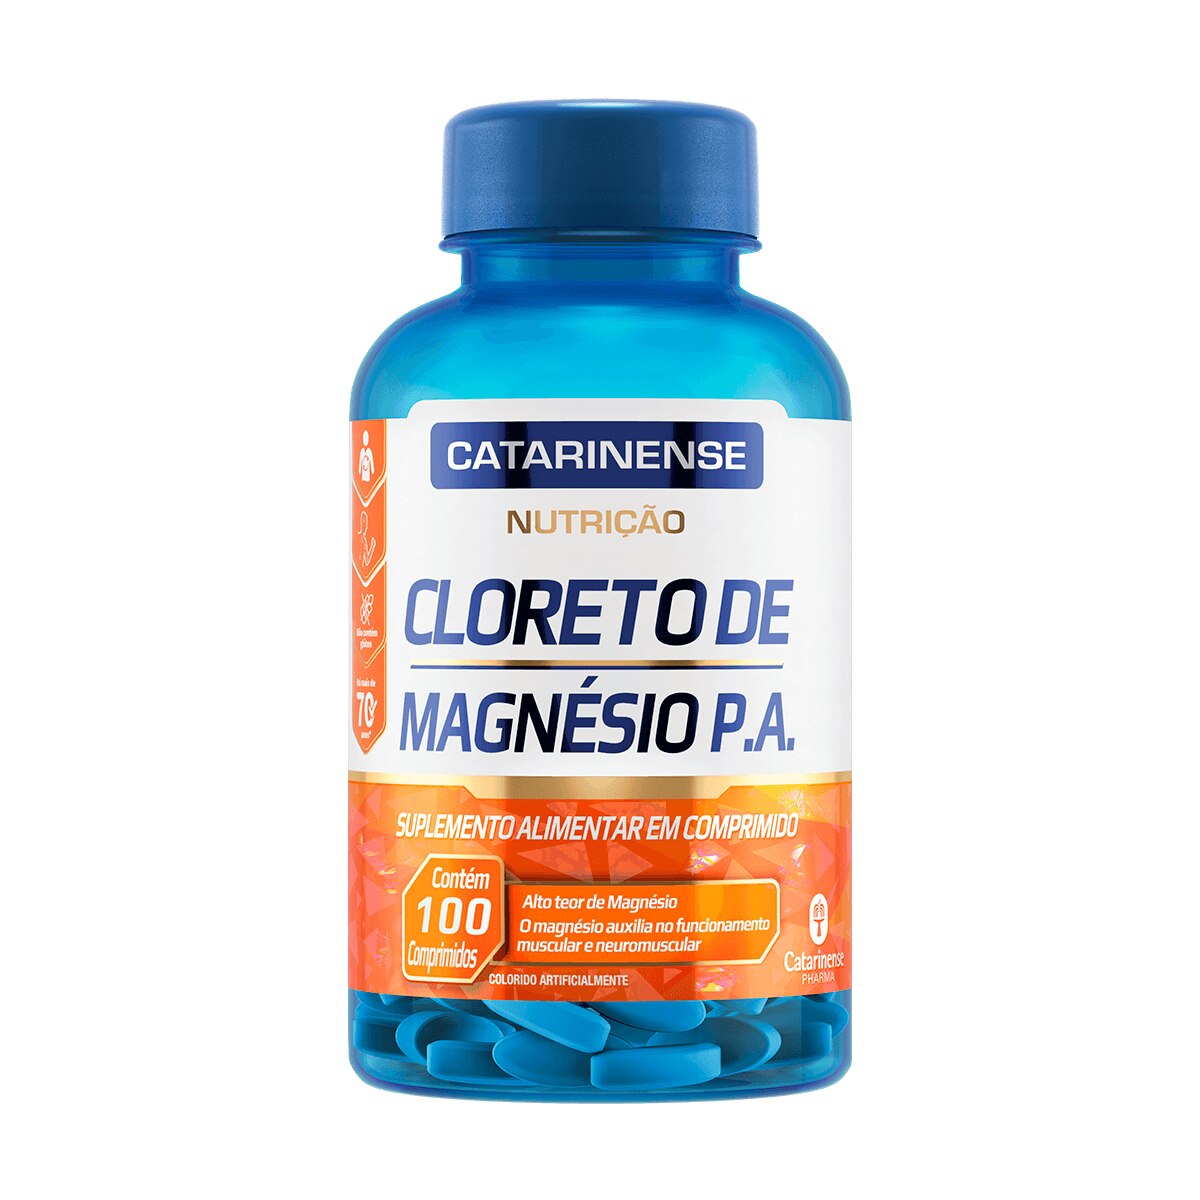 Cloreto de Magnesio P.A. Catarinense 100 Comprimidos